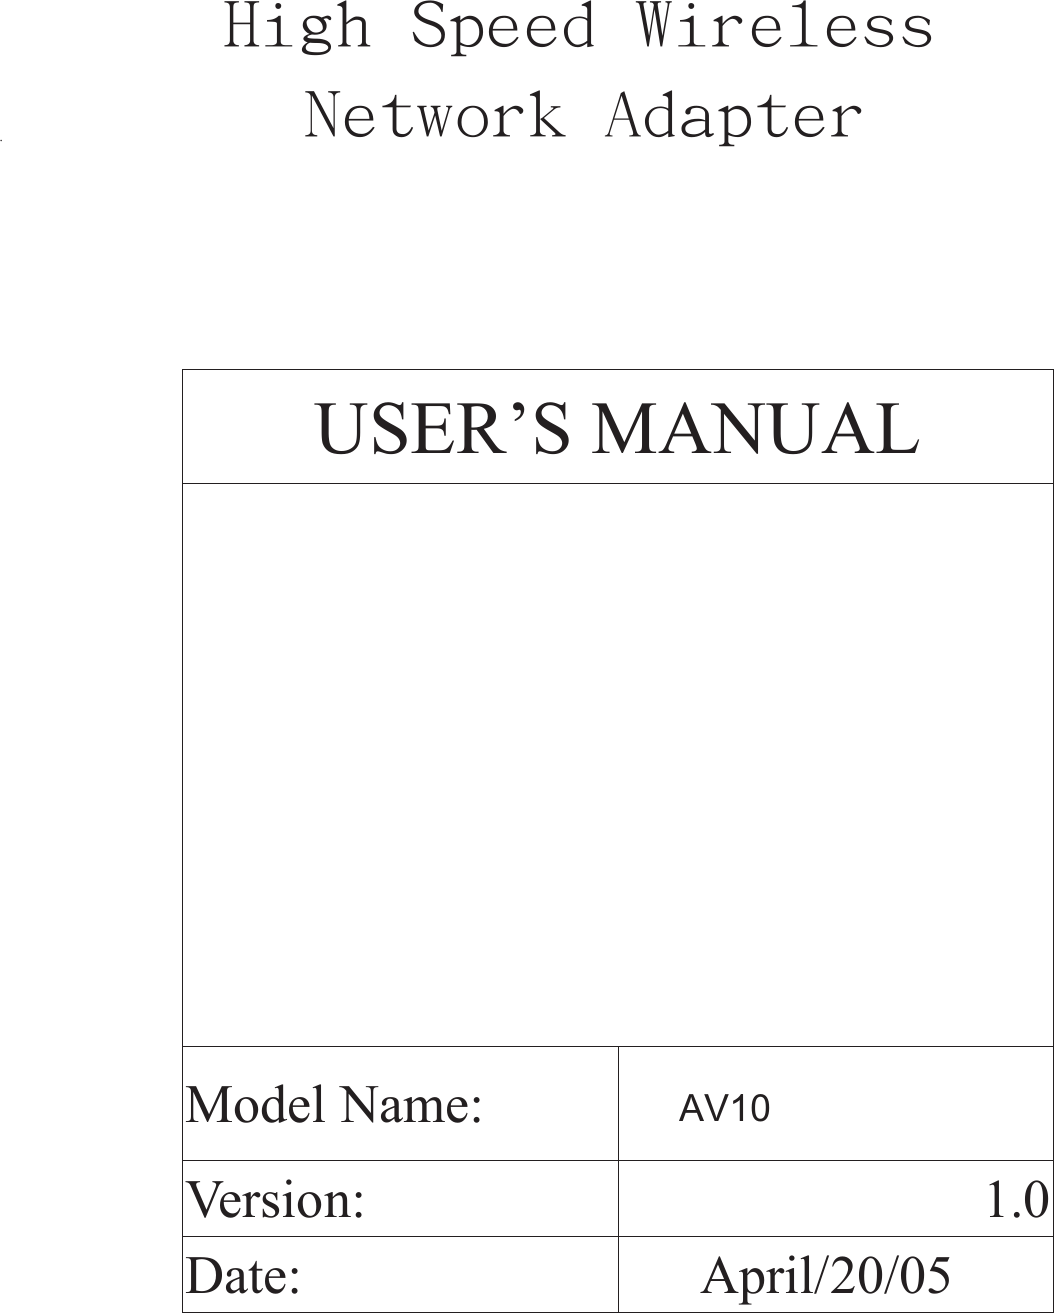   USER’S MANUAL      Model Name: Version:  1.0Date:  April/20/05AV10      High Speed Wireless               .        Network Adapter